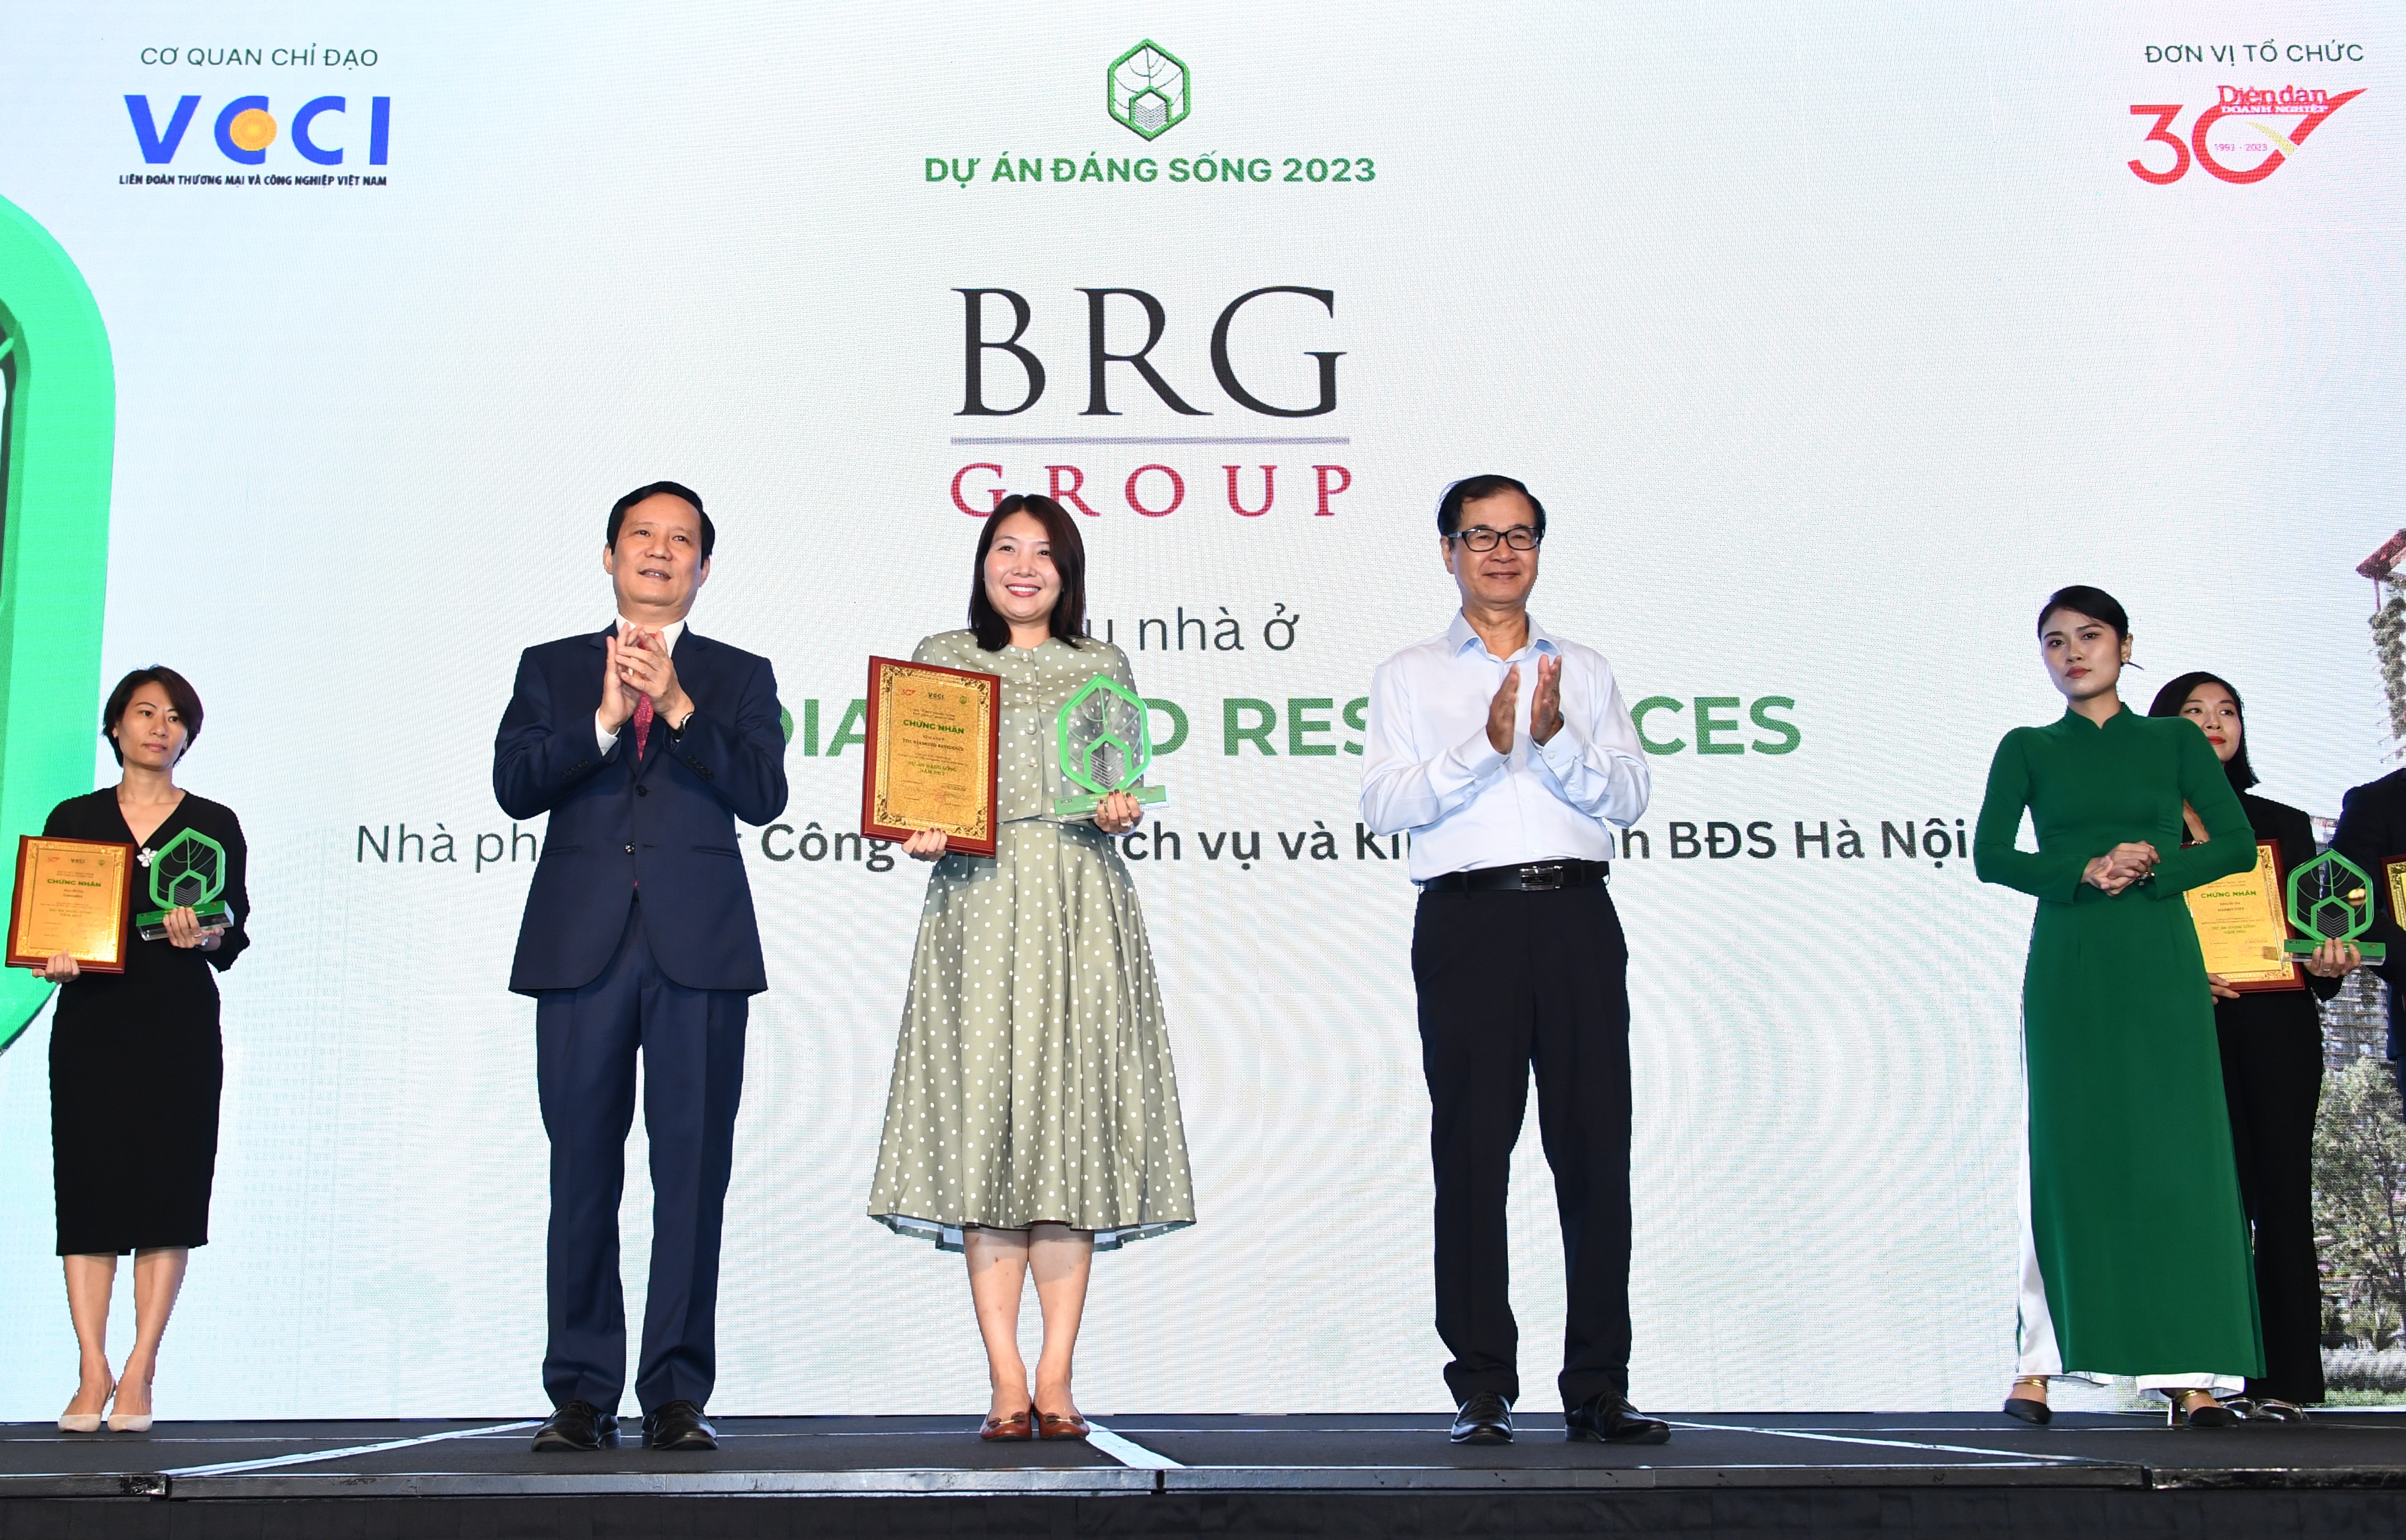 Đại diện Tập đoàn BRG nhận giải thưởng “Dự án đáng sống năm 2023” cho tổ hợp căn hộ cao cấp The Diamond Residence.